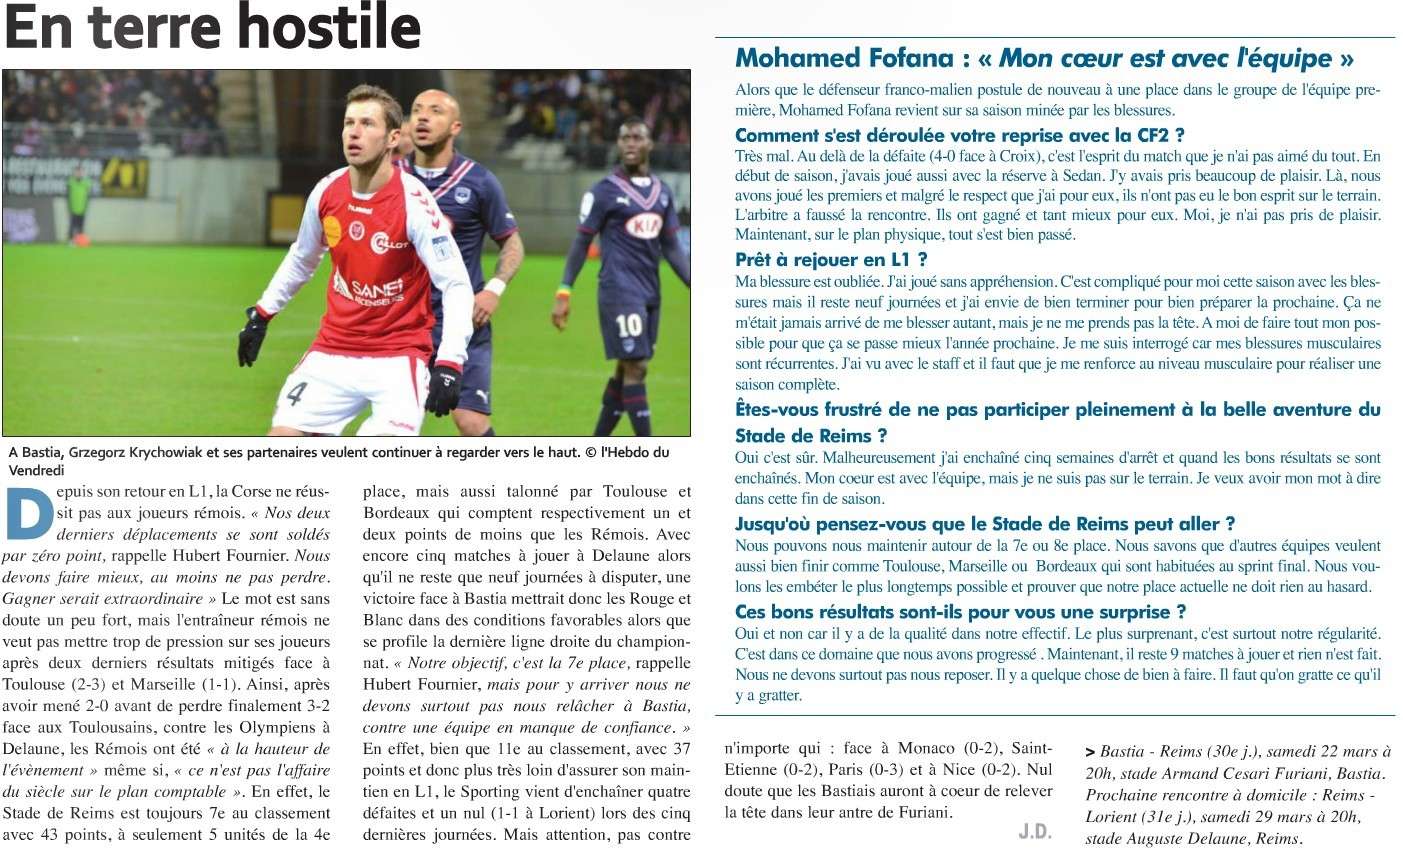 Bastia 2-0 Reims : et résumé offert par Brelandas et Fabrice S272